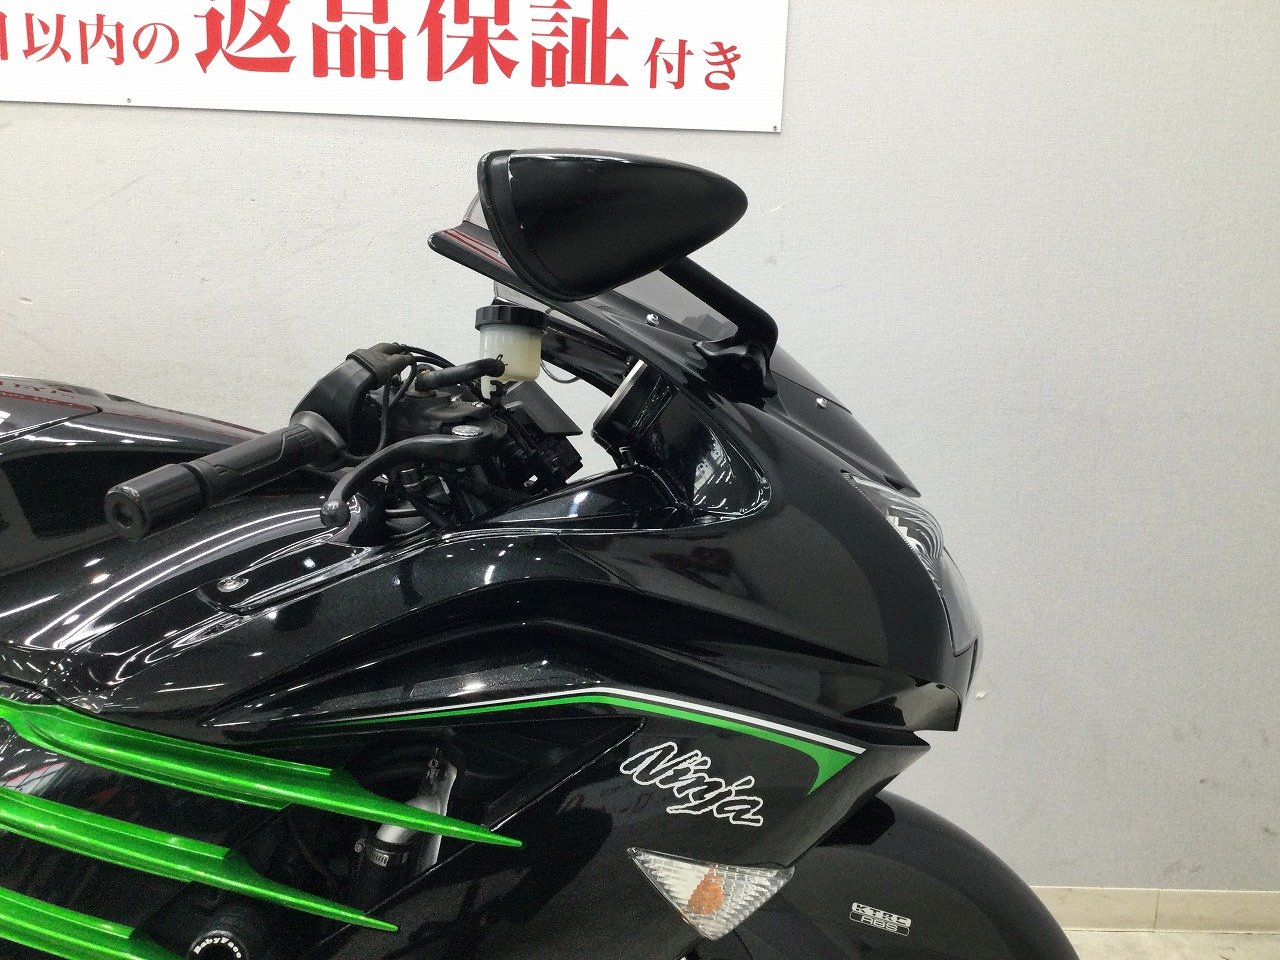 Ninja ZX-14R 2013年モデル 逆輸入車 東南アジア仕様 | バイク買うなら 